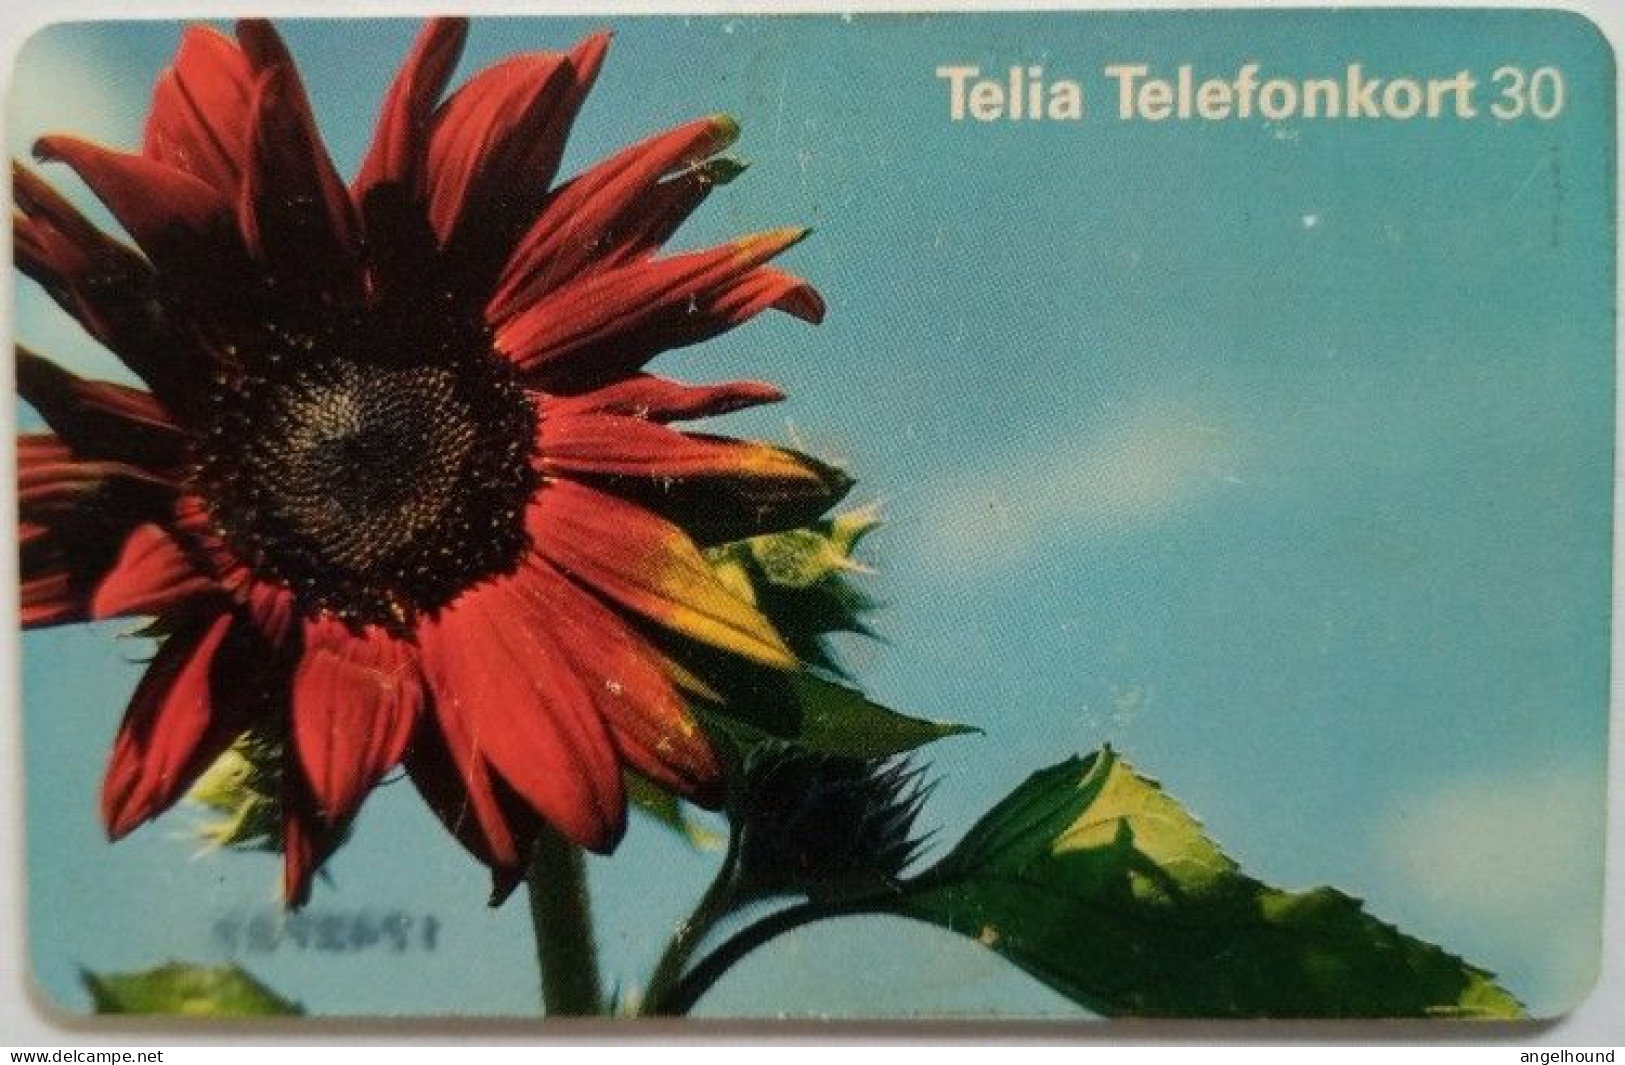 Sweden 30Mk. Chip Card - Red Flower - Zweden